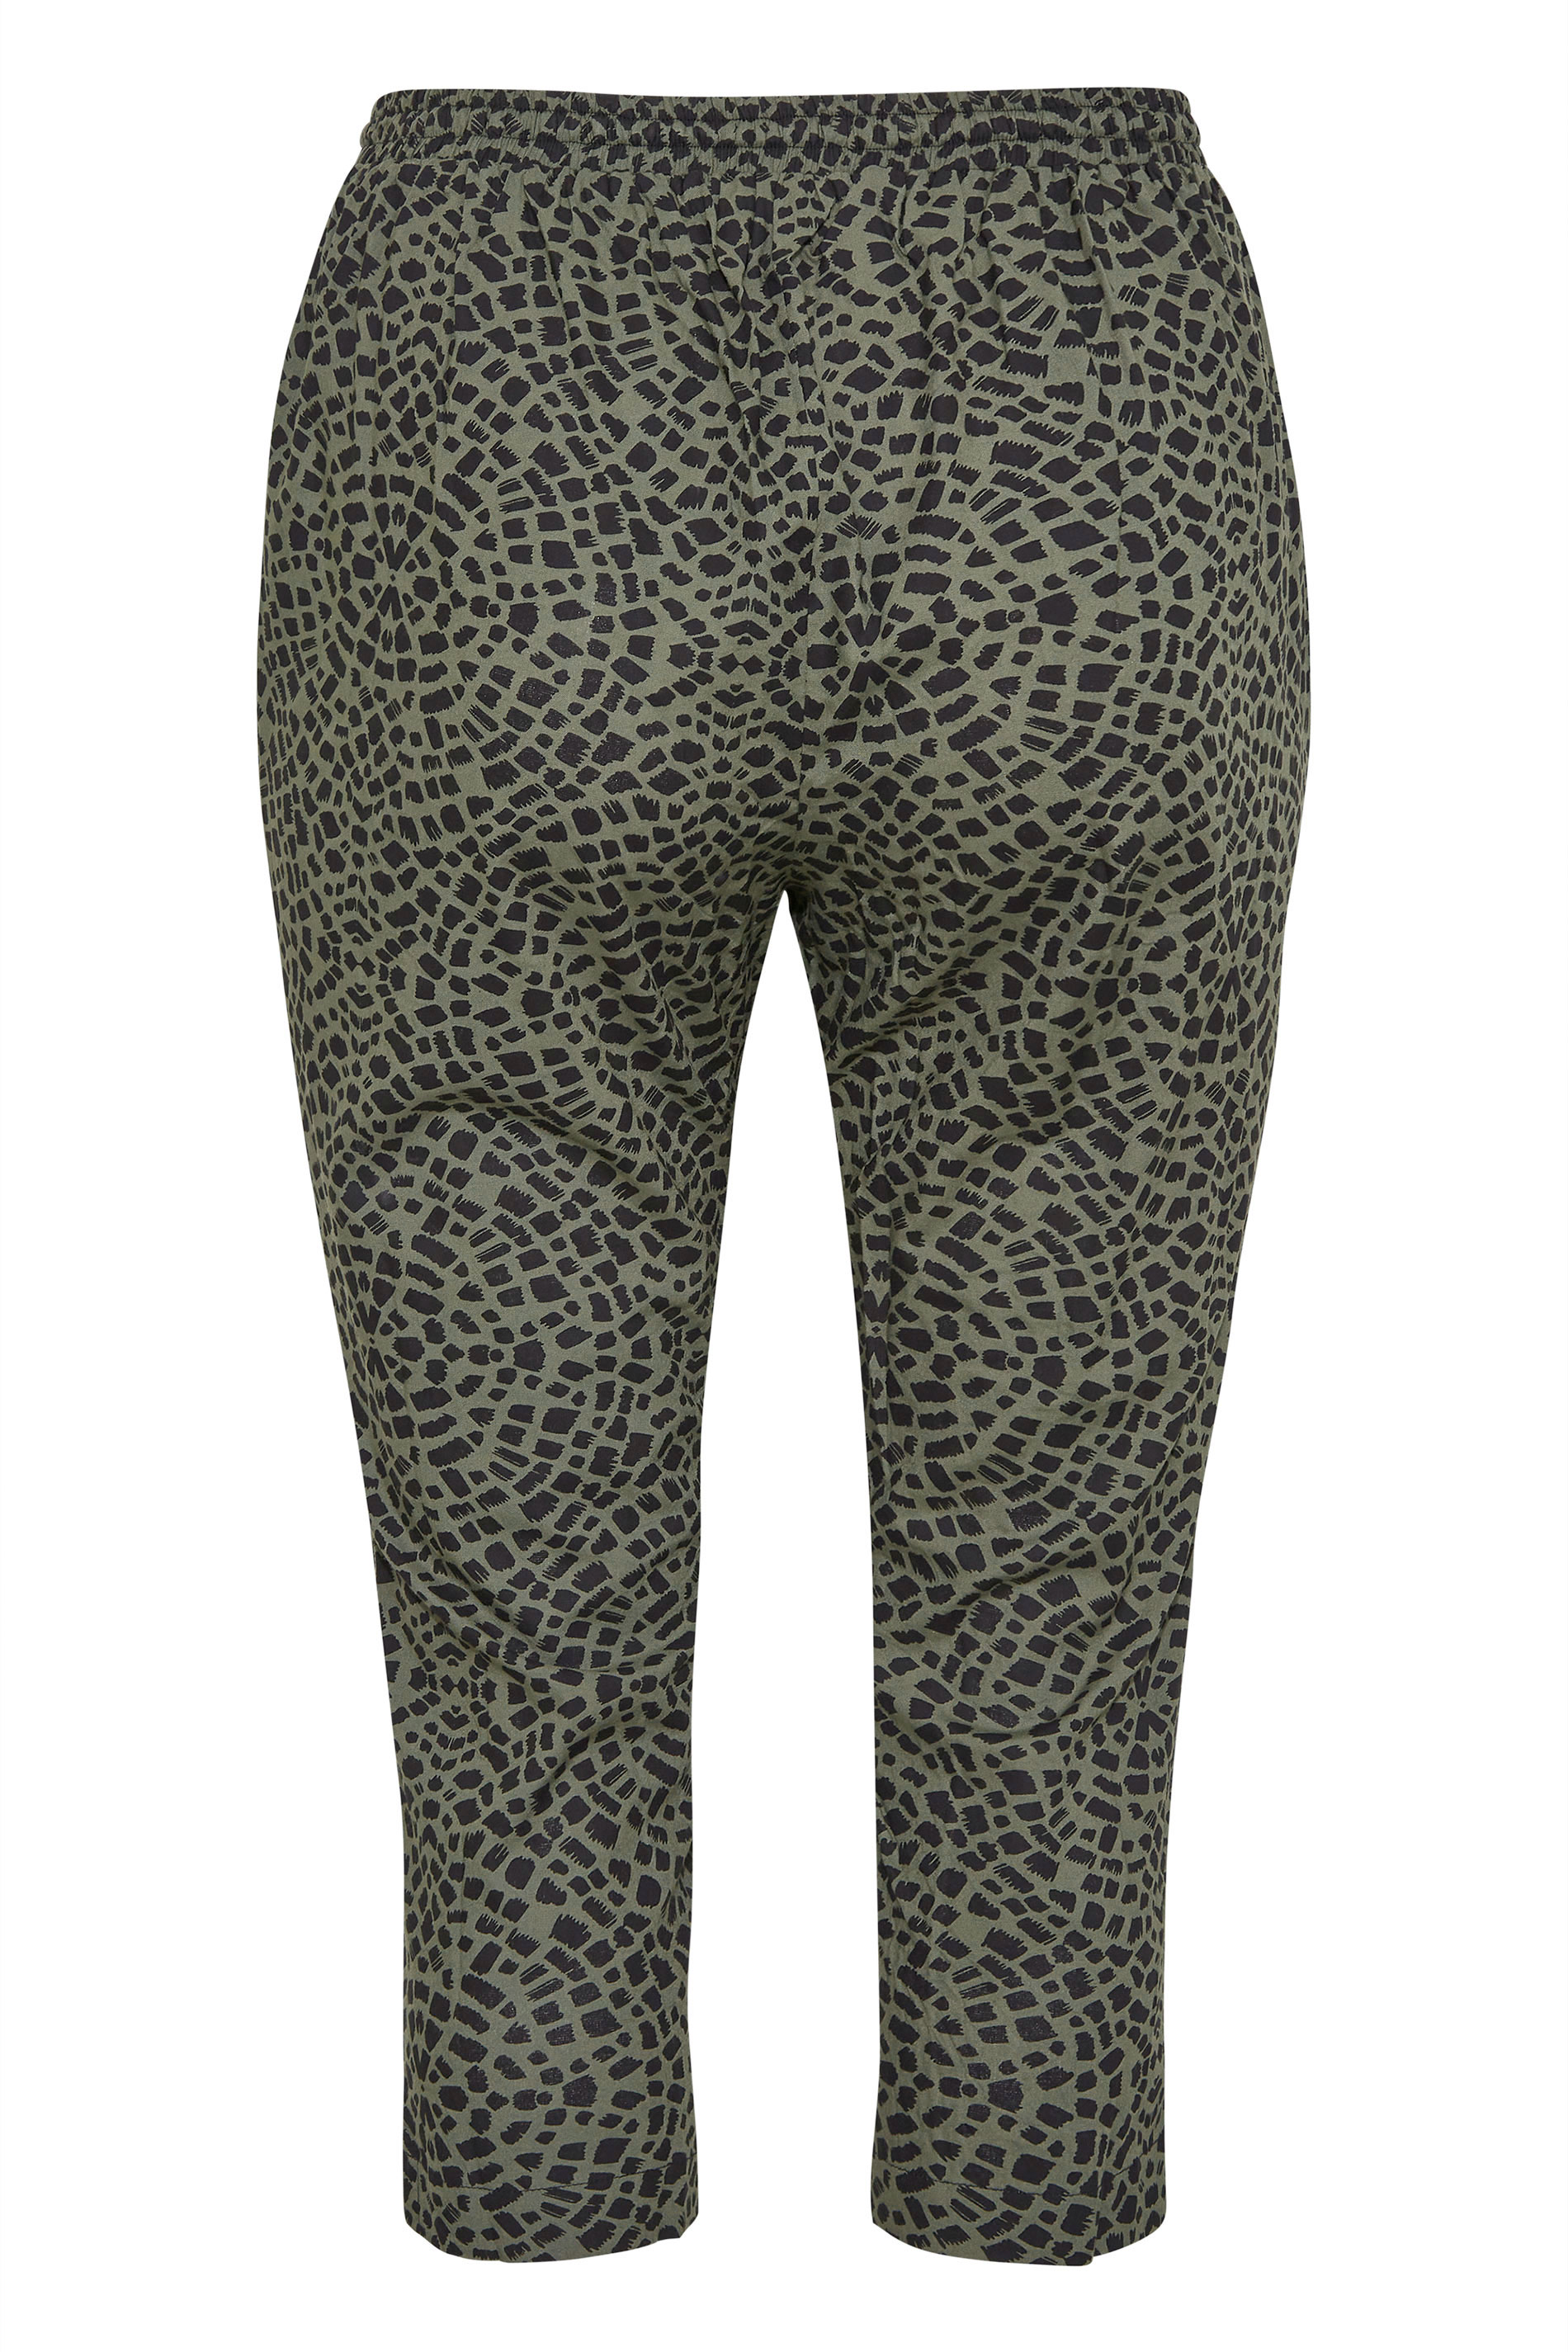 Grande taille  Pantalons Grande taille  Joggings | Jogging Vert Kaki Animal Léger Pantacourt - JN22471